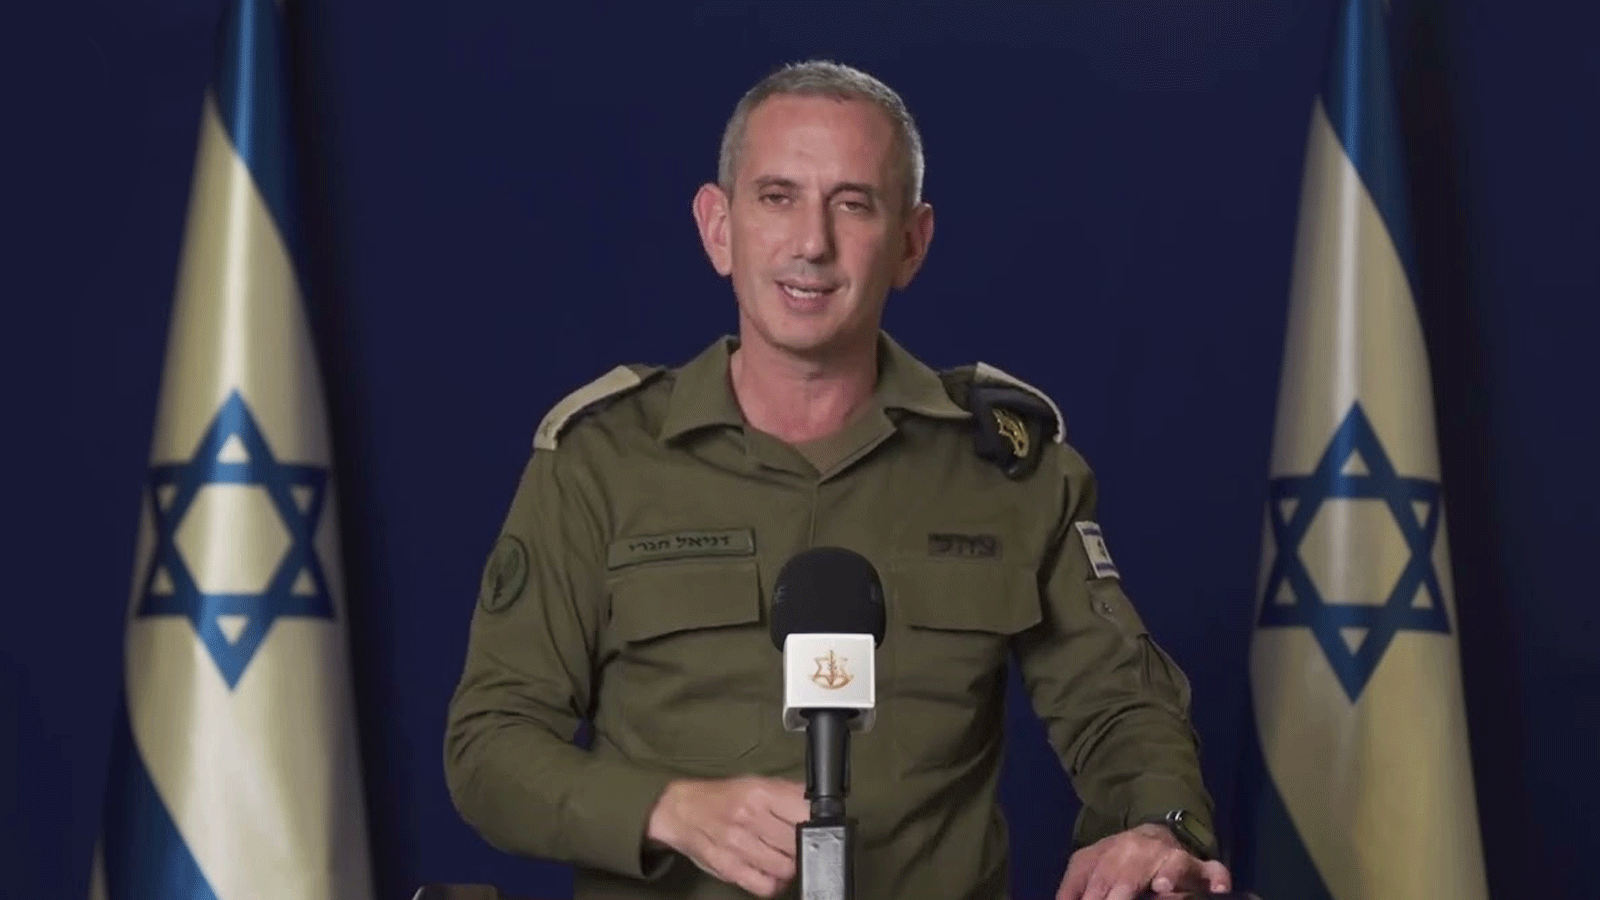 المتحدث باسم الجيش الإسرائيلي دانيال هاغاري